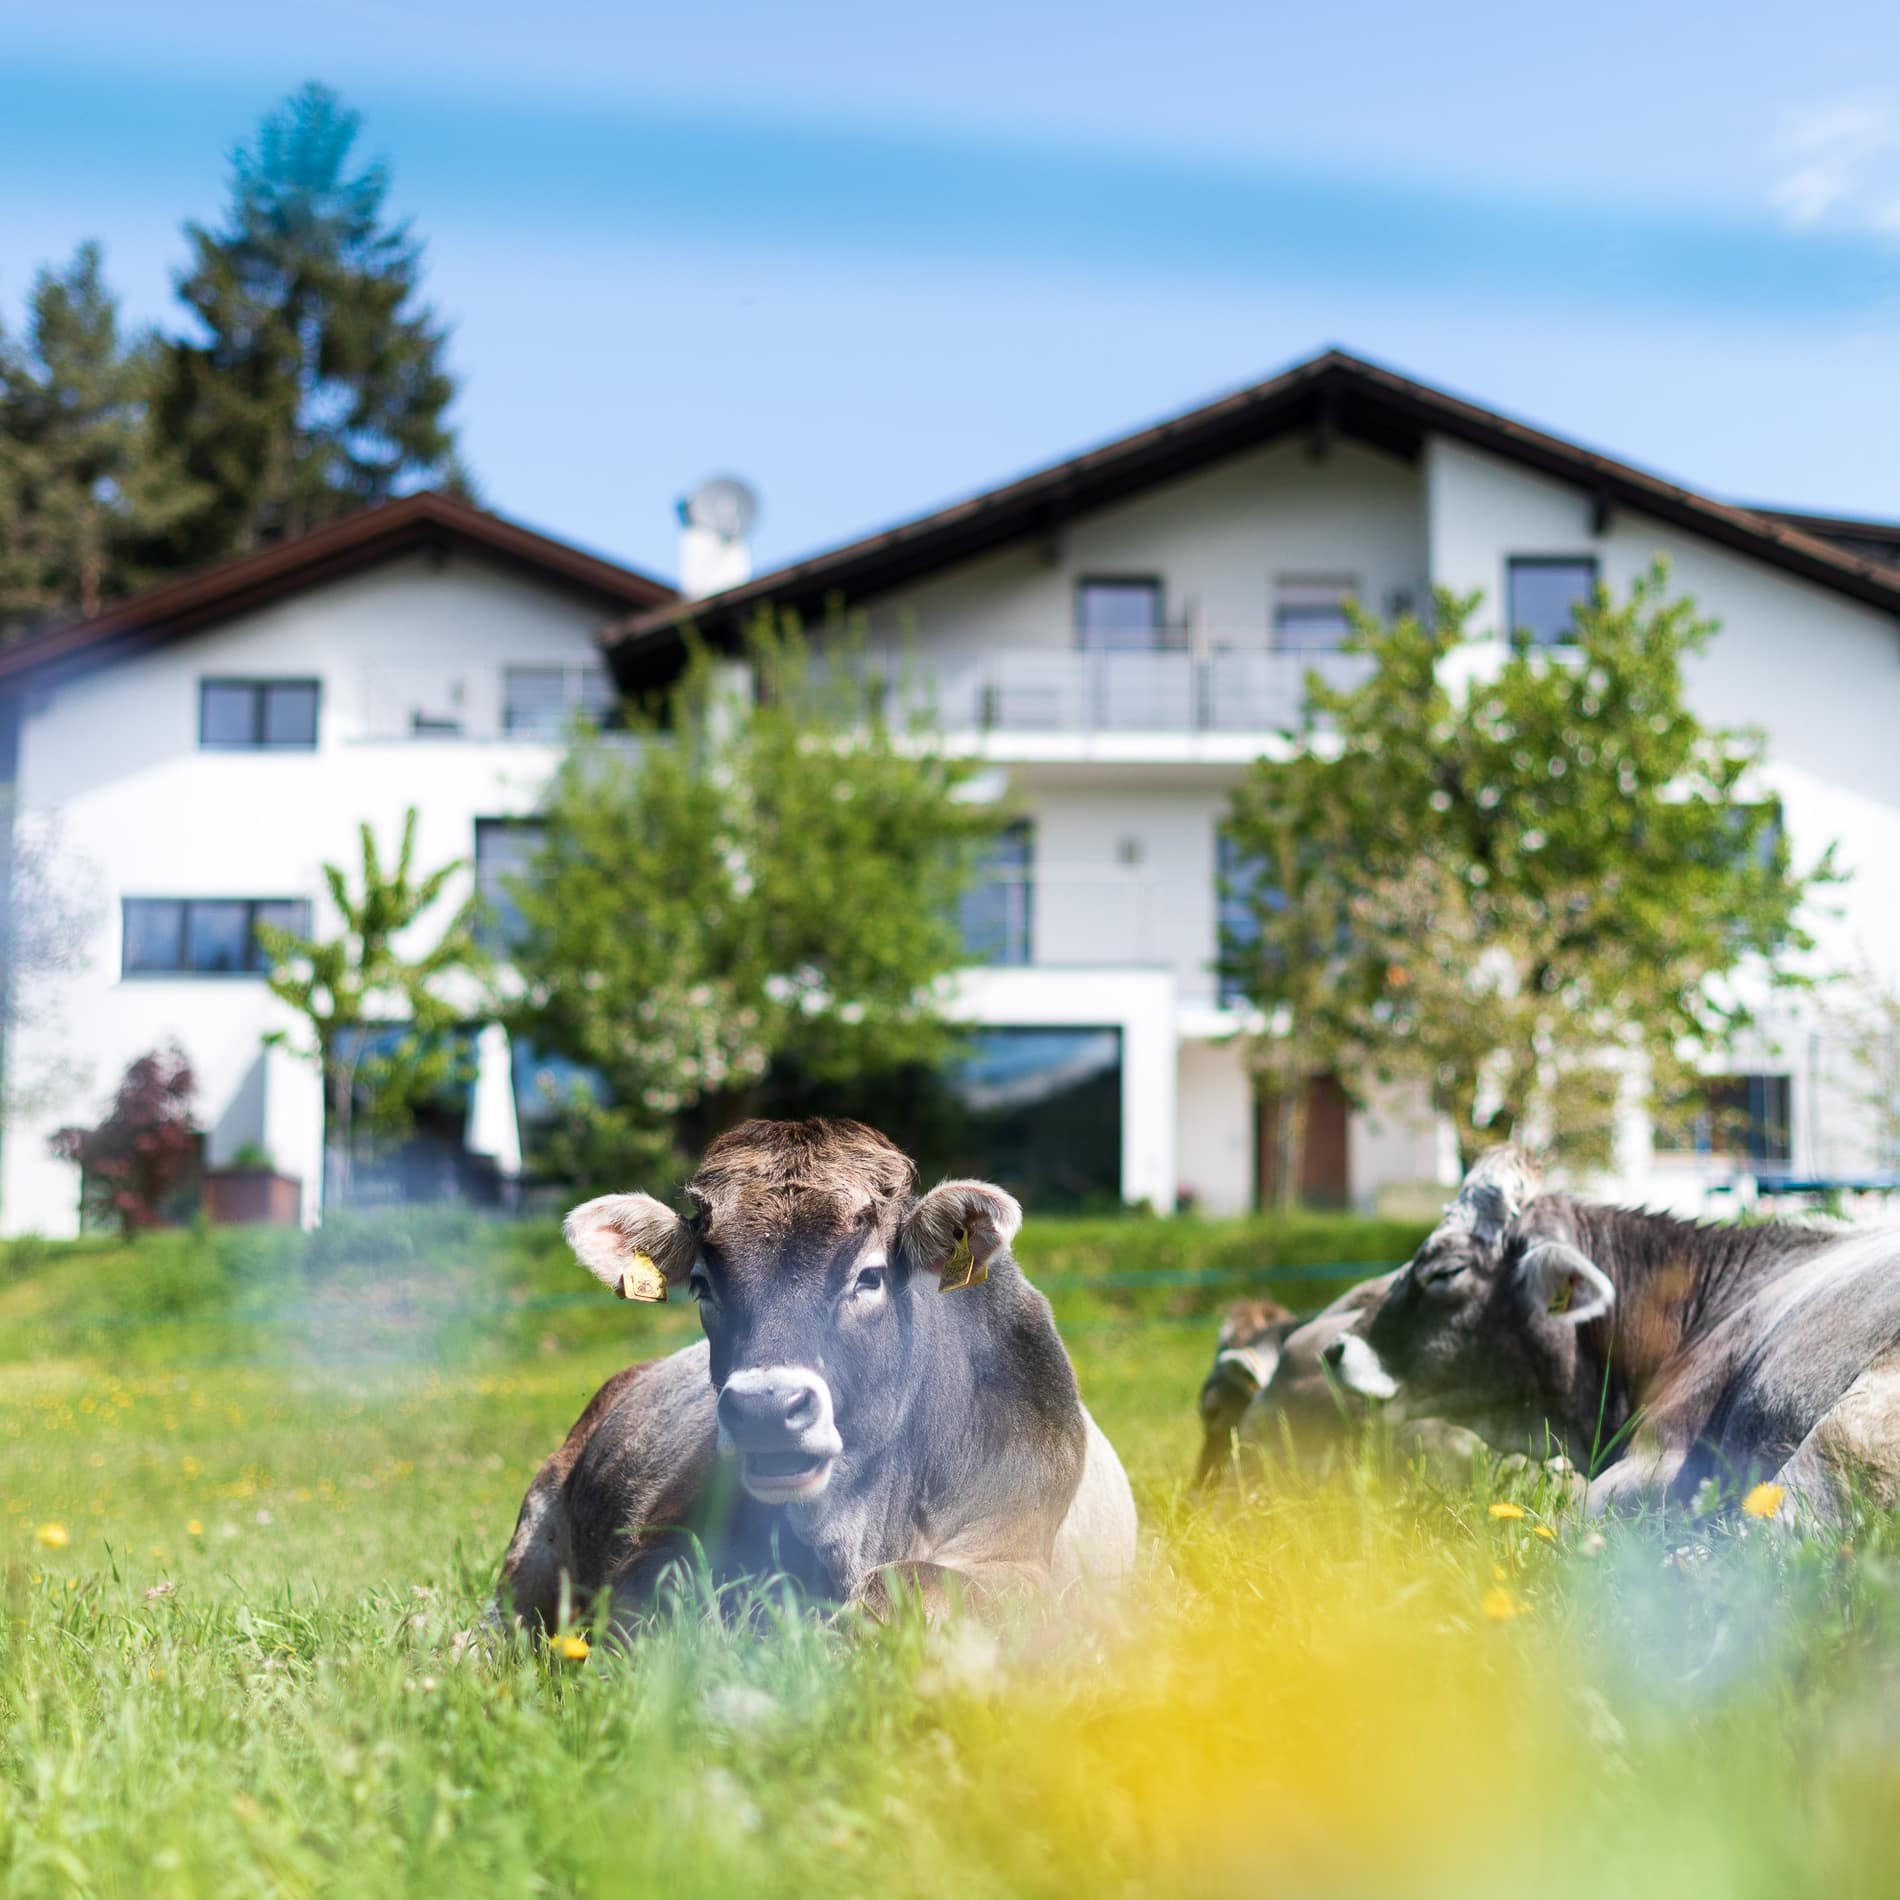 Vor der Ferienwohnung in Bozen liegen Kühe wiederkäuend im Gras